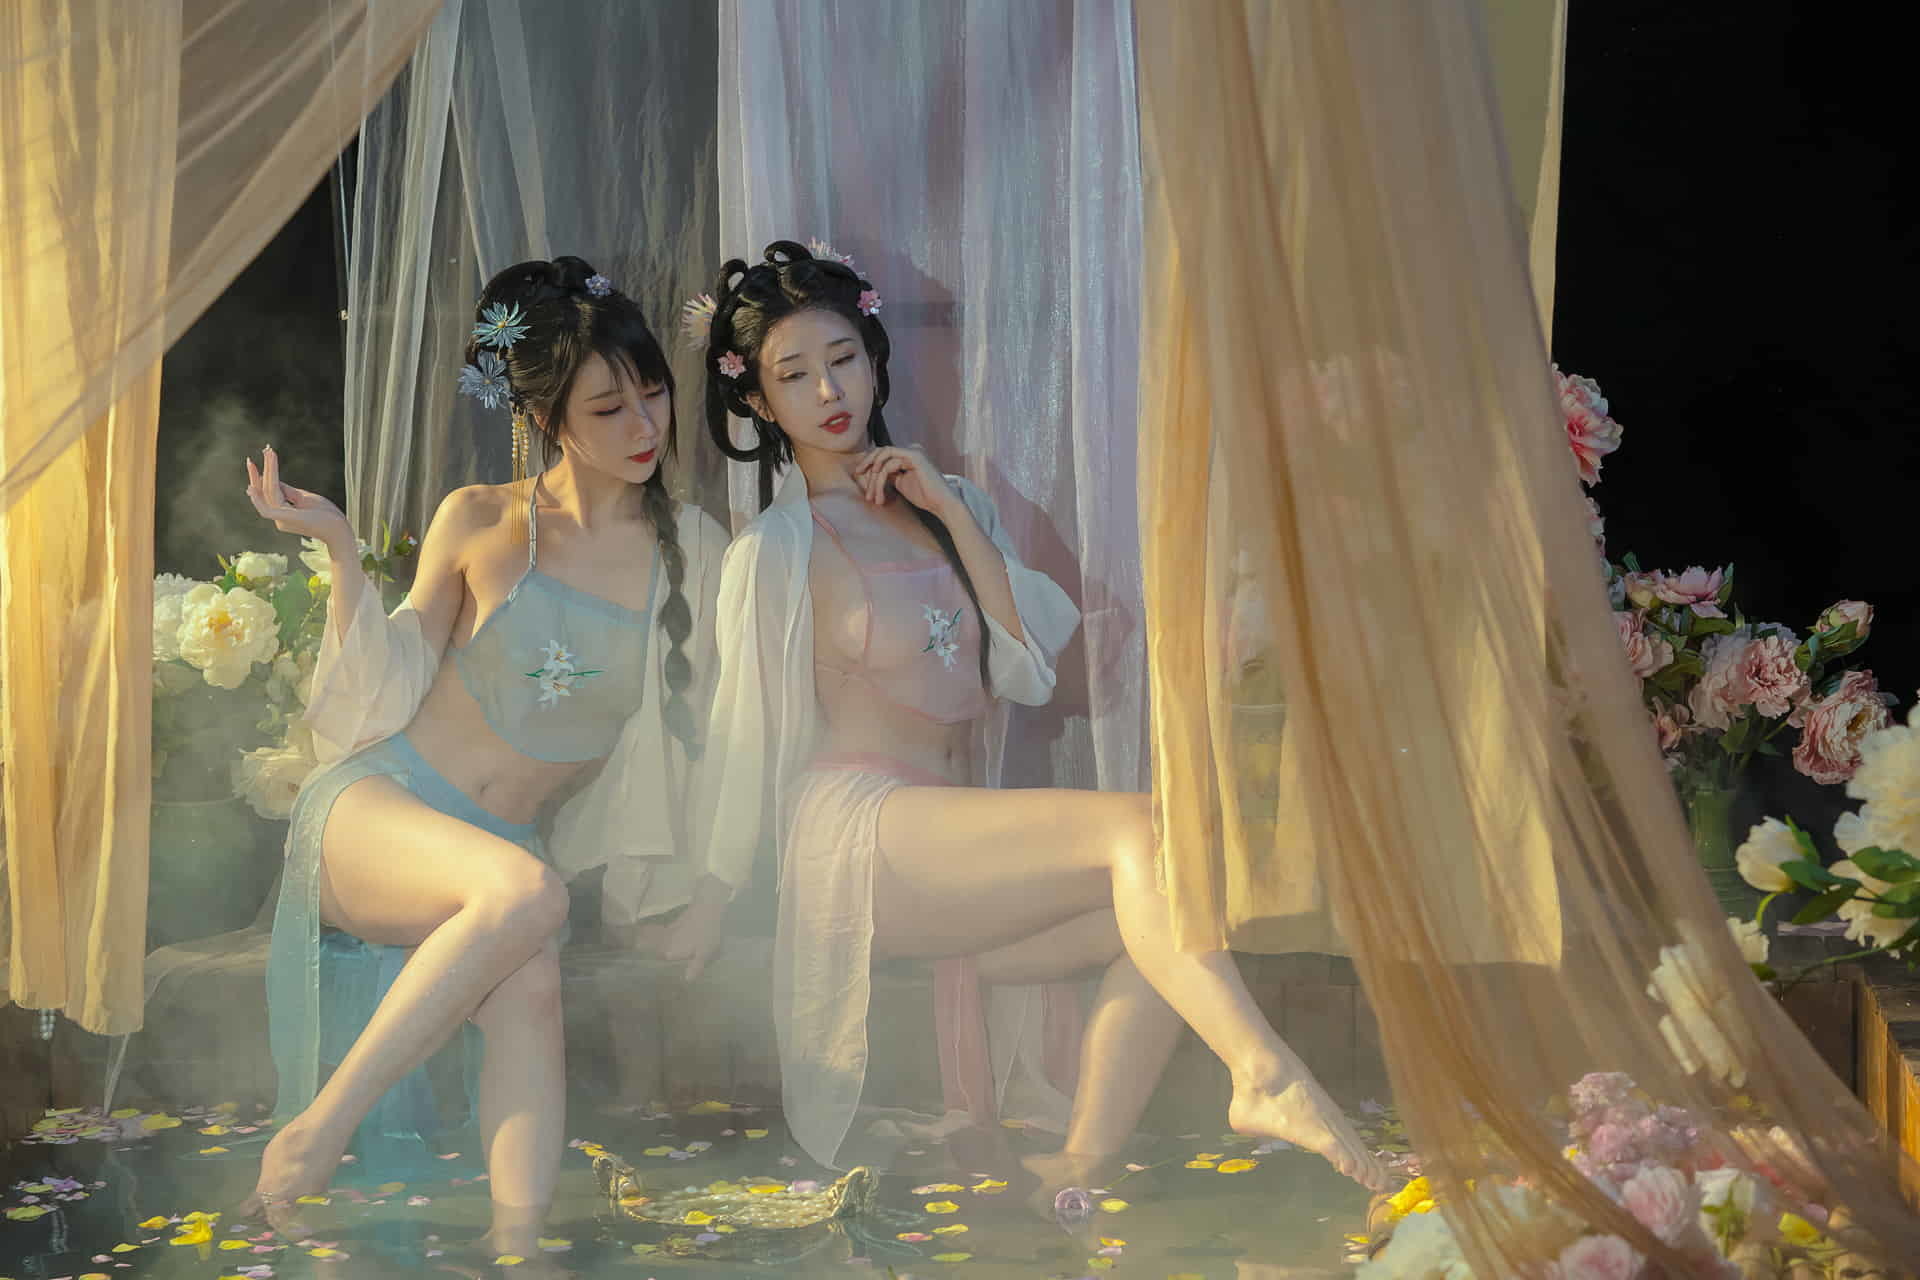 최고의 듀얼 모델 인터넷 연예인 미녀 윤시시와 나이 타오가 고대 의상을 입고 욕조에서 놀고 있습니다.